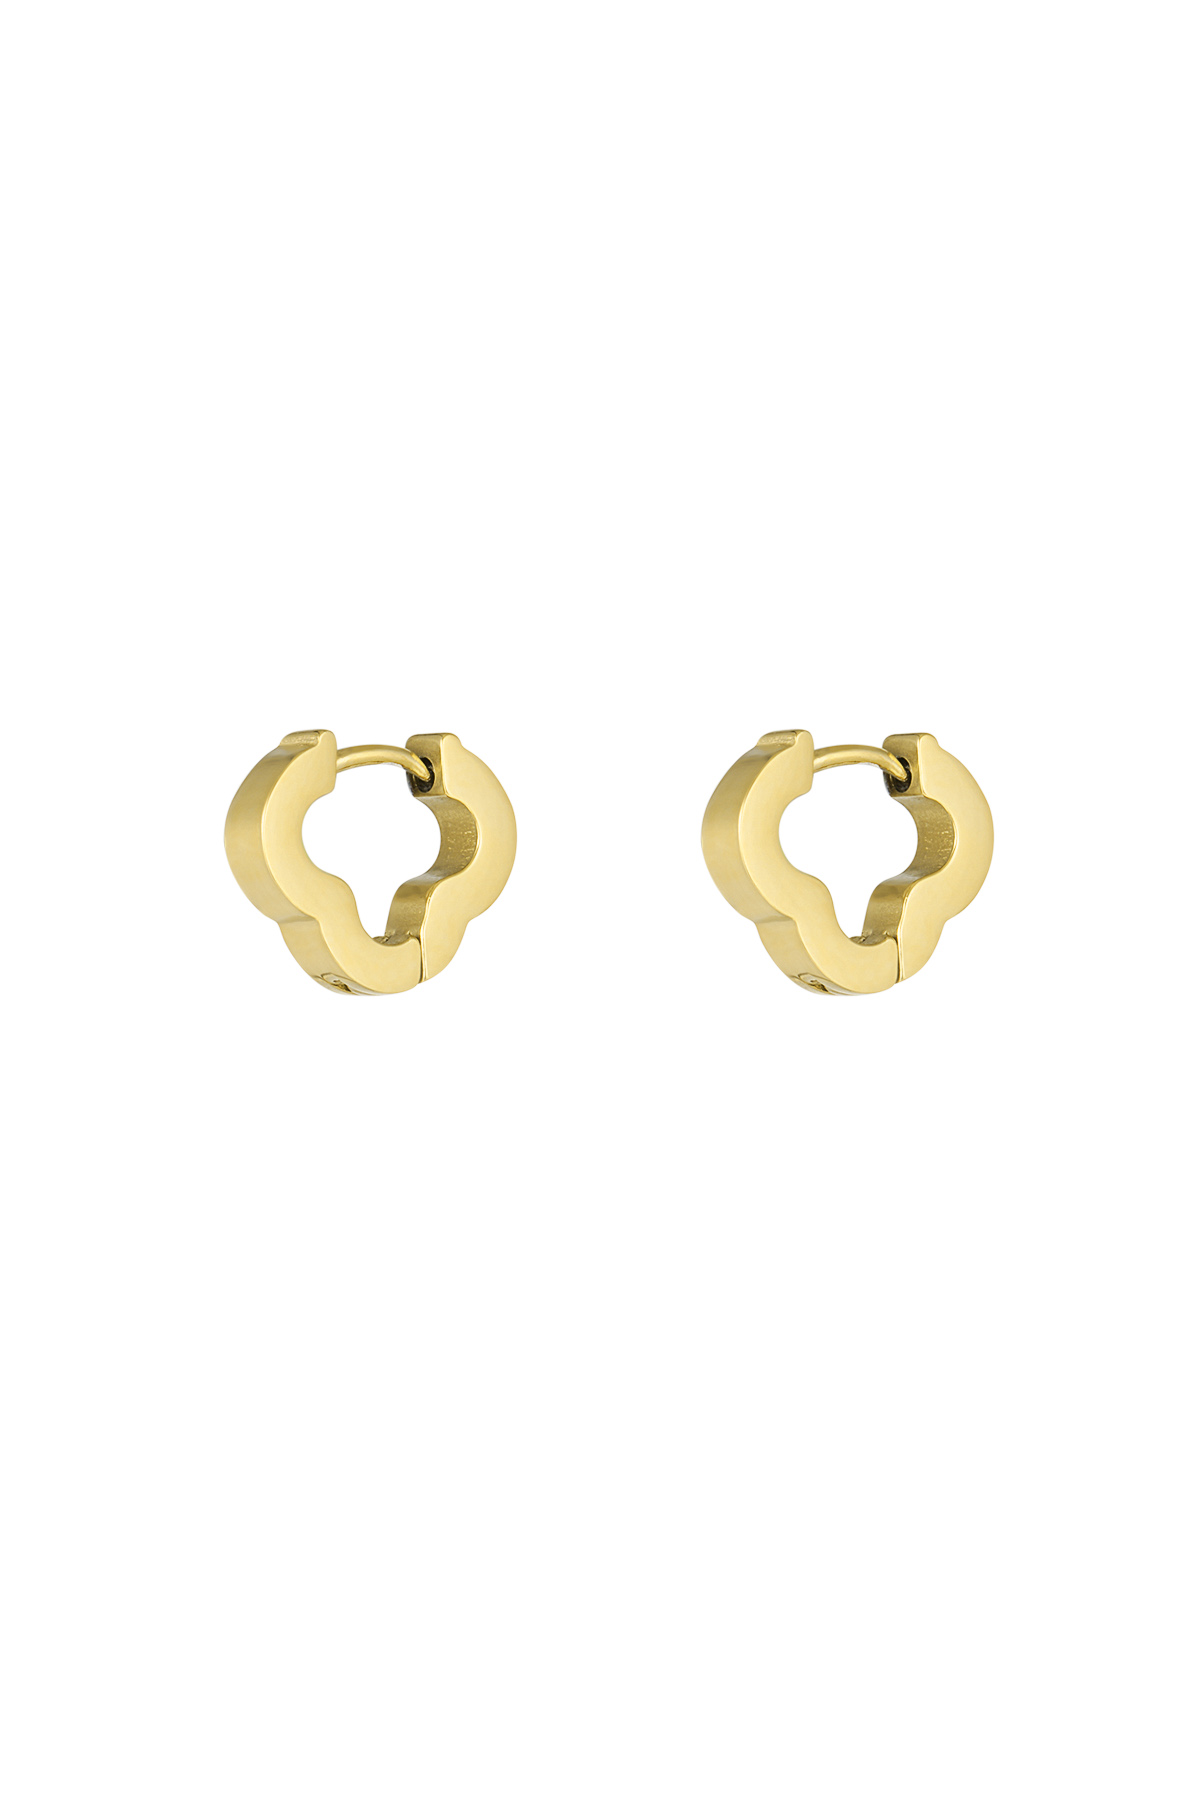 Basic clover earrings small - gold 